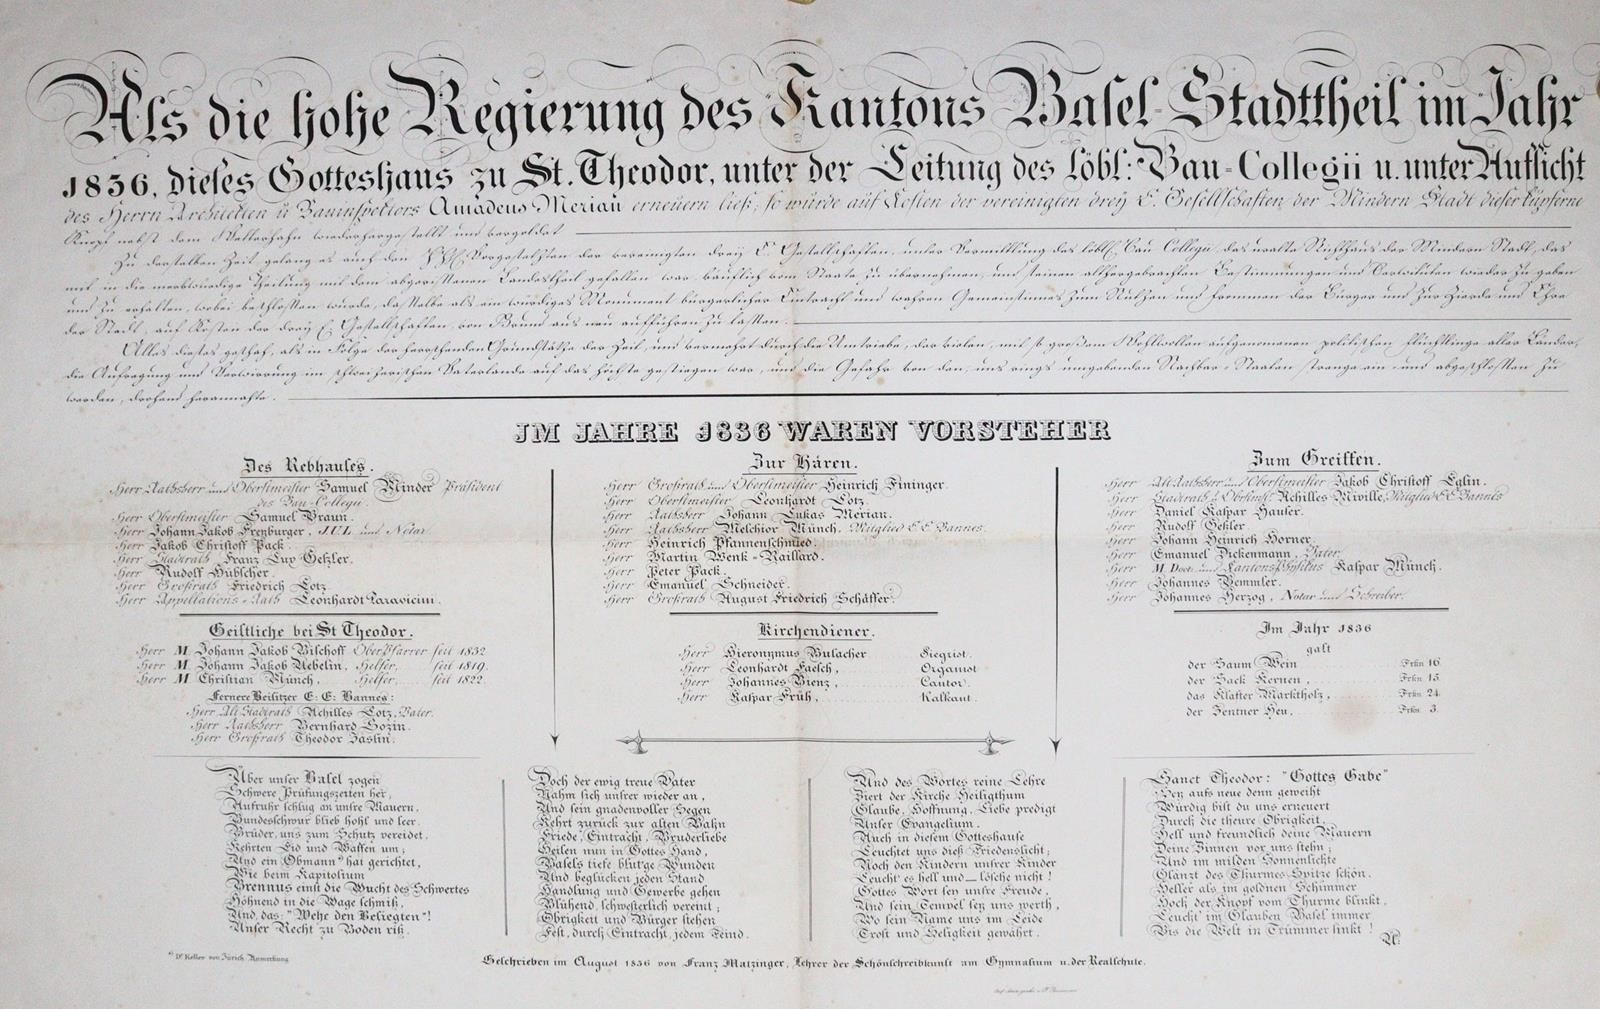 Matzinger,F. Als die hohe Regierung des Kantons Basel-Stadttheil im Jahr 1836 di&hellip;